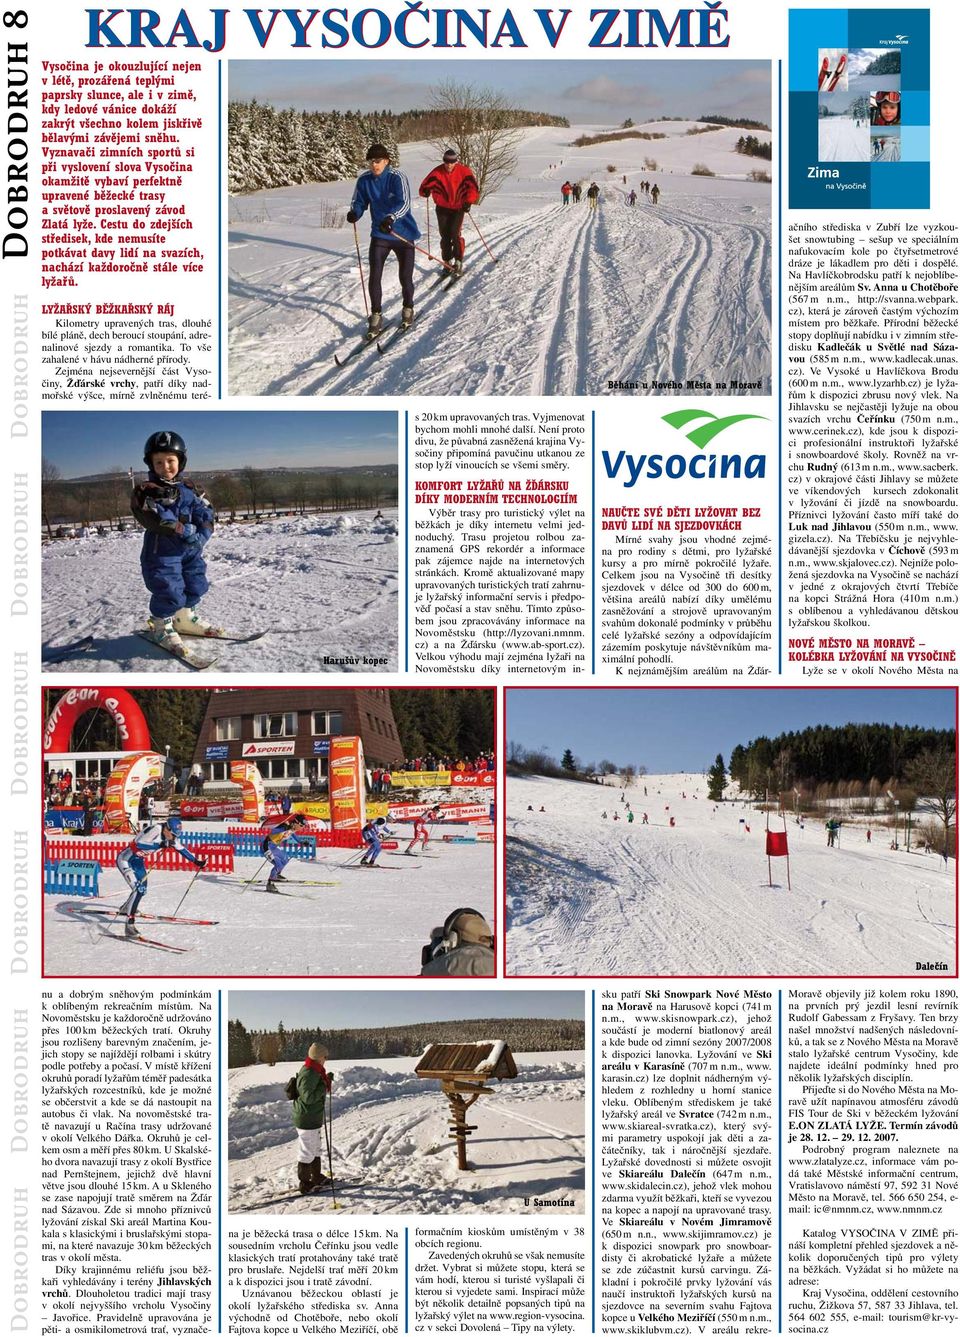 Vyznavači zimních sportů si při vyslovení slova Vysočina okamžitě vybaví perfektně upravené běžecké trasy a světově proslavený závod Zlatá lyže.